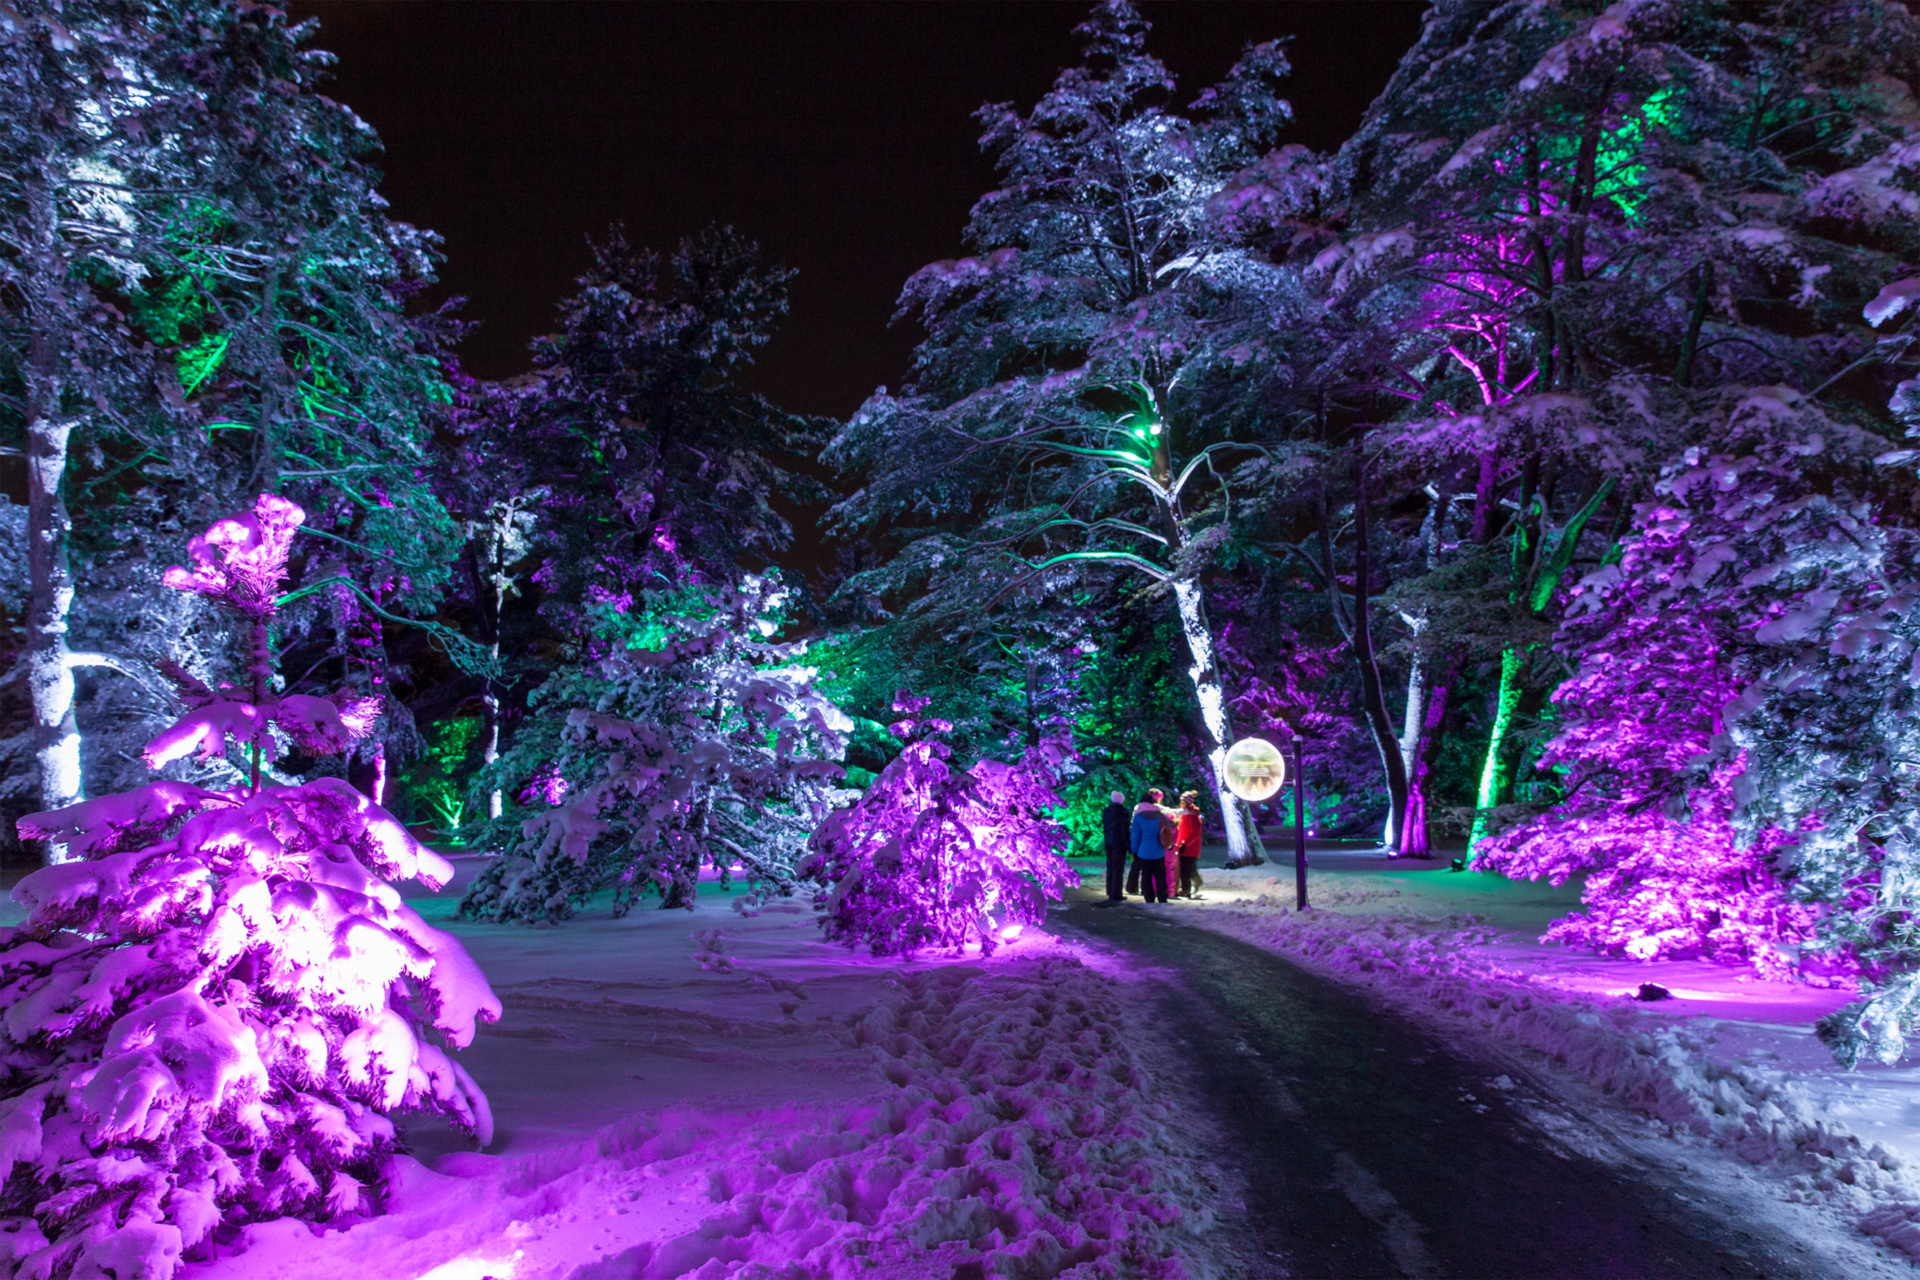 Guests walk among trees at Illumination